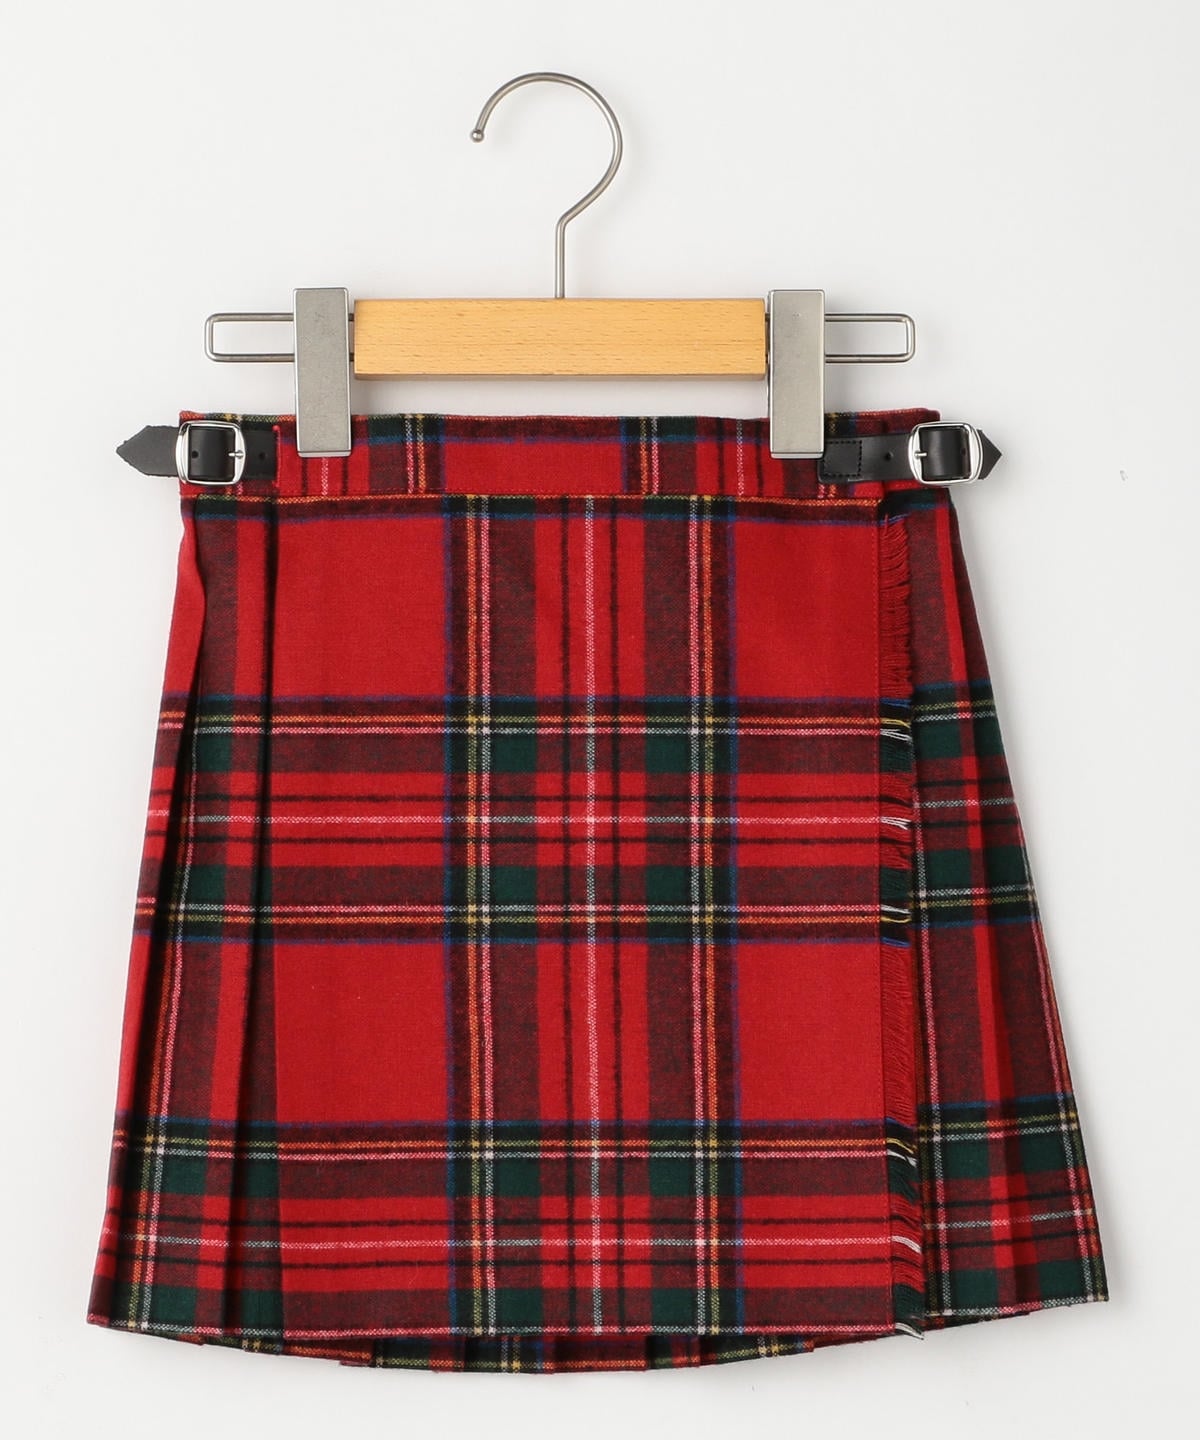 O'NEIL OF DUBLIN:ウール キルト スカート(100～130cm): スカート 